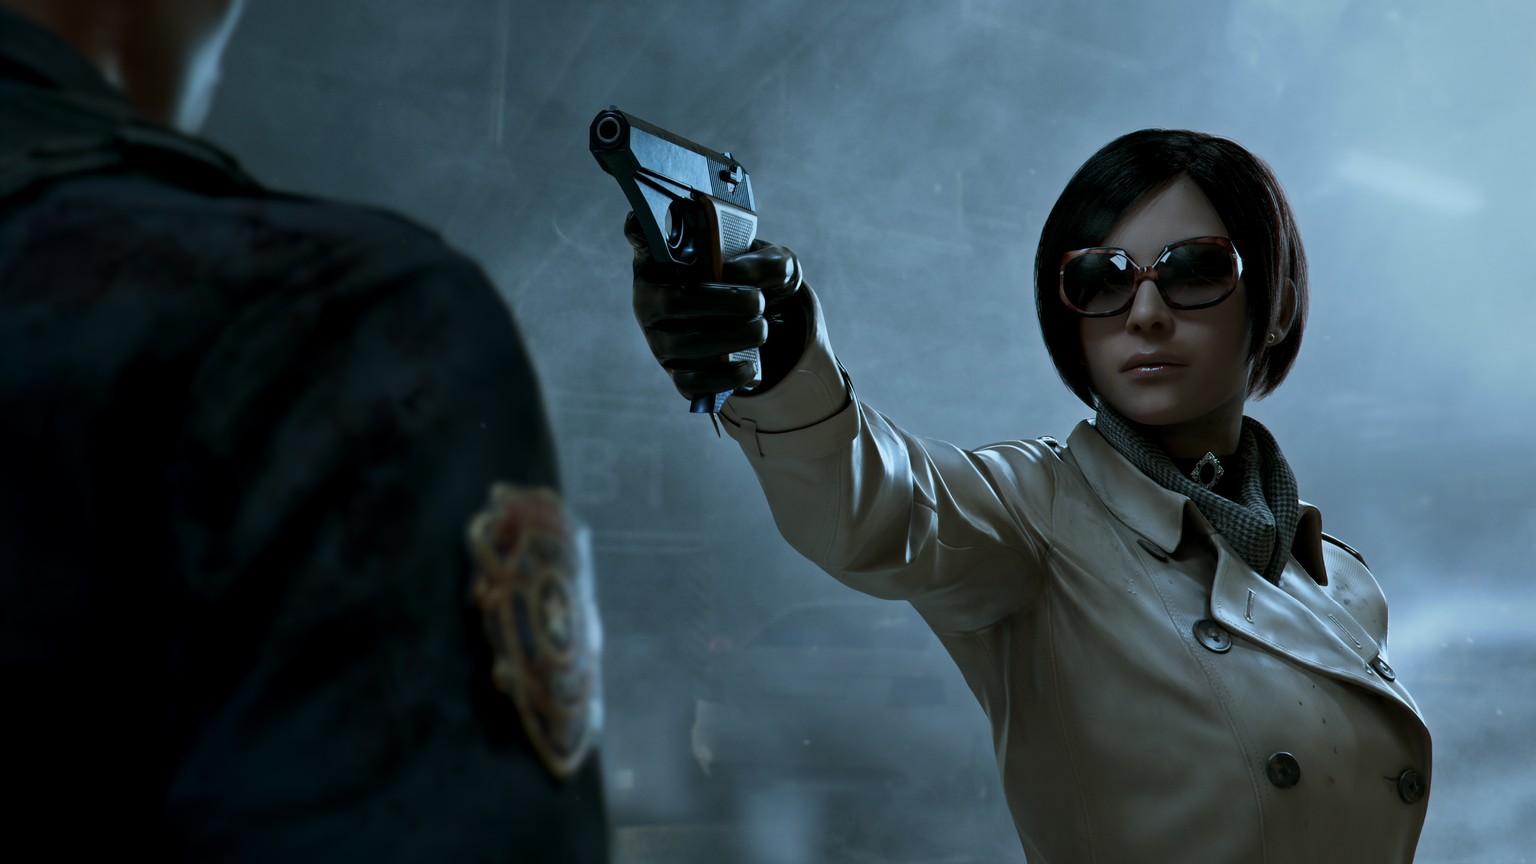 Natürlich ist auch die mysteriöse Ada Wong dabei. Warum sie im Dunkeln stets eine Sonnenbrille trägt, ist jedoch unbekannt.